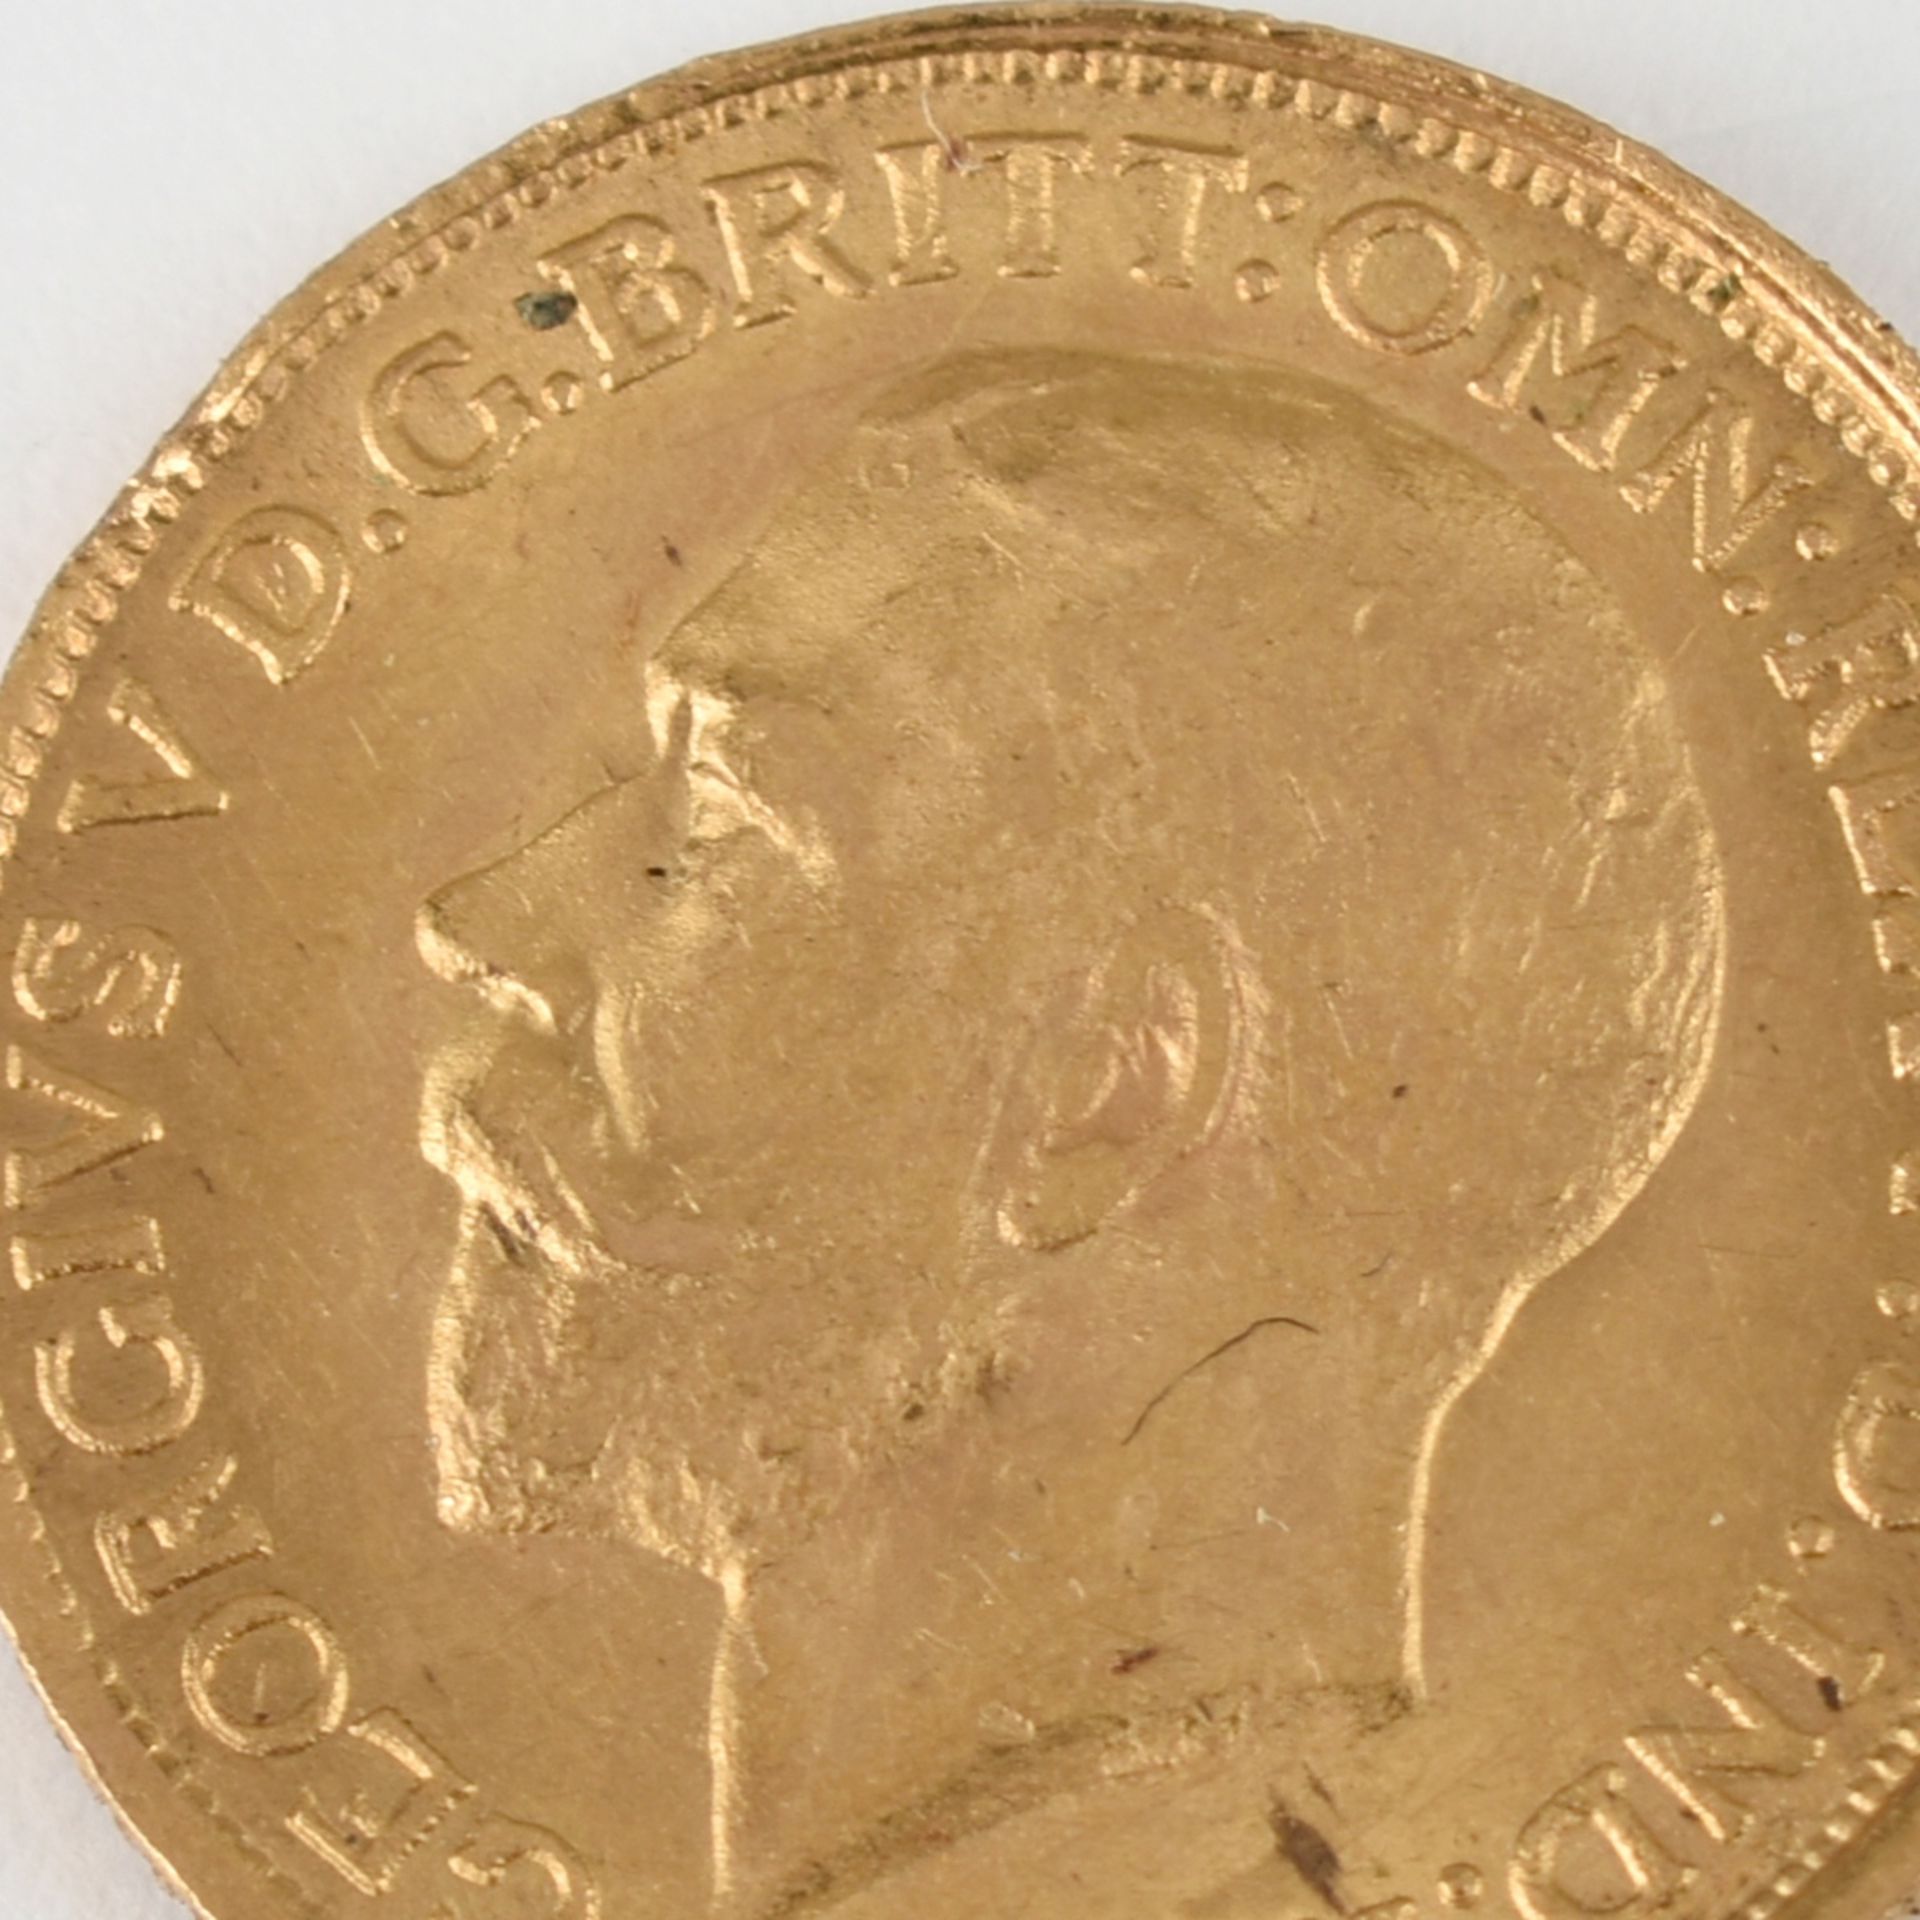 Goldmünze Großbritannien 1911 Sovereign in Gold, 916/1000, 7,988 g, D ca. 22 mm, av. König George V.